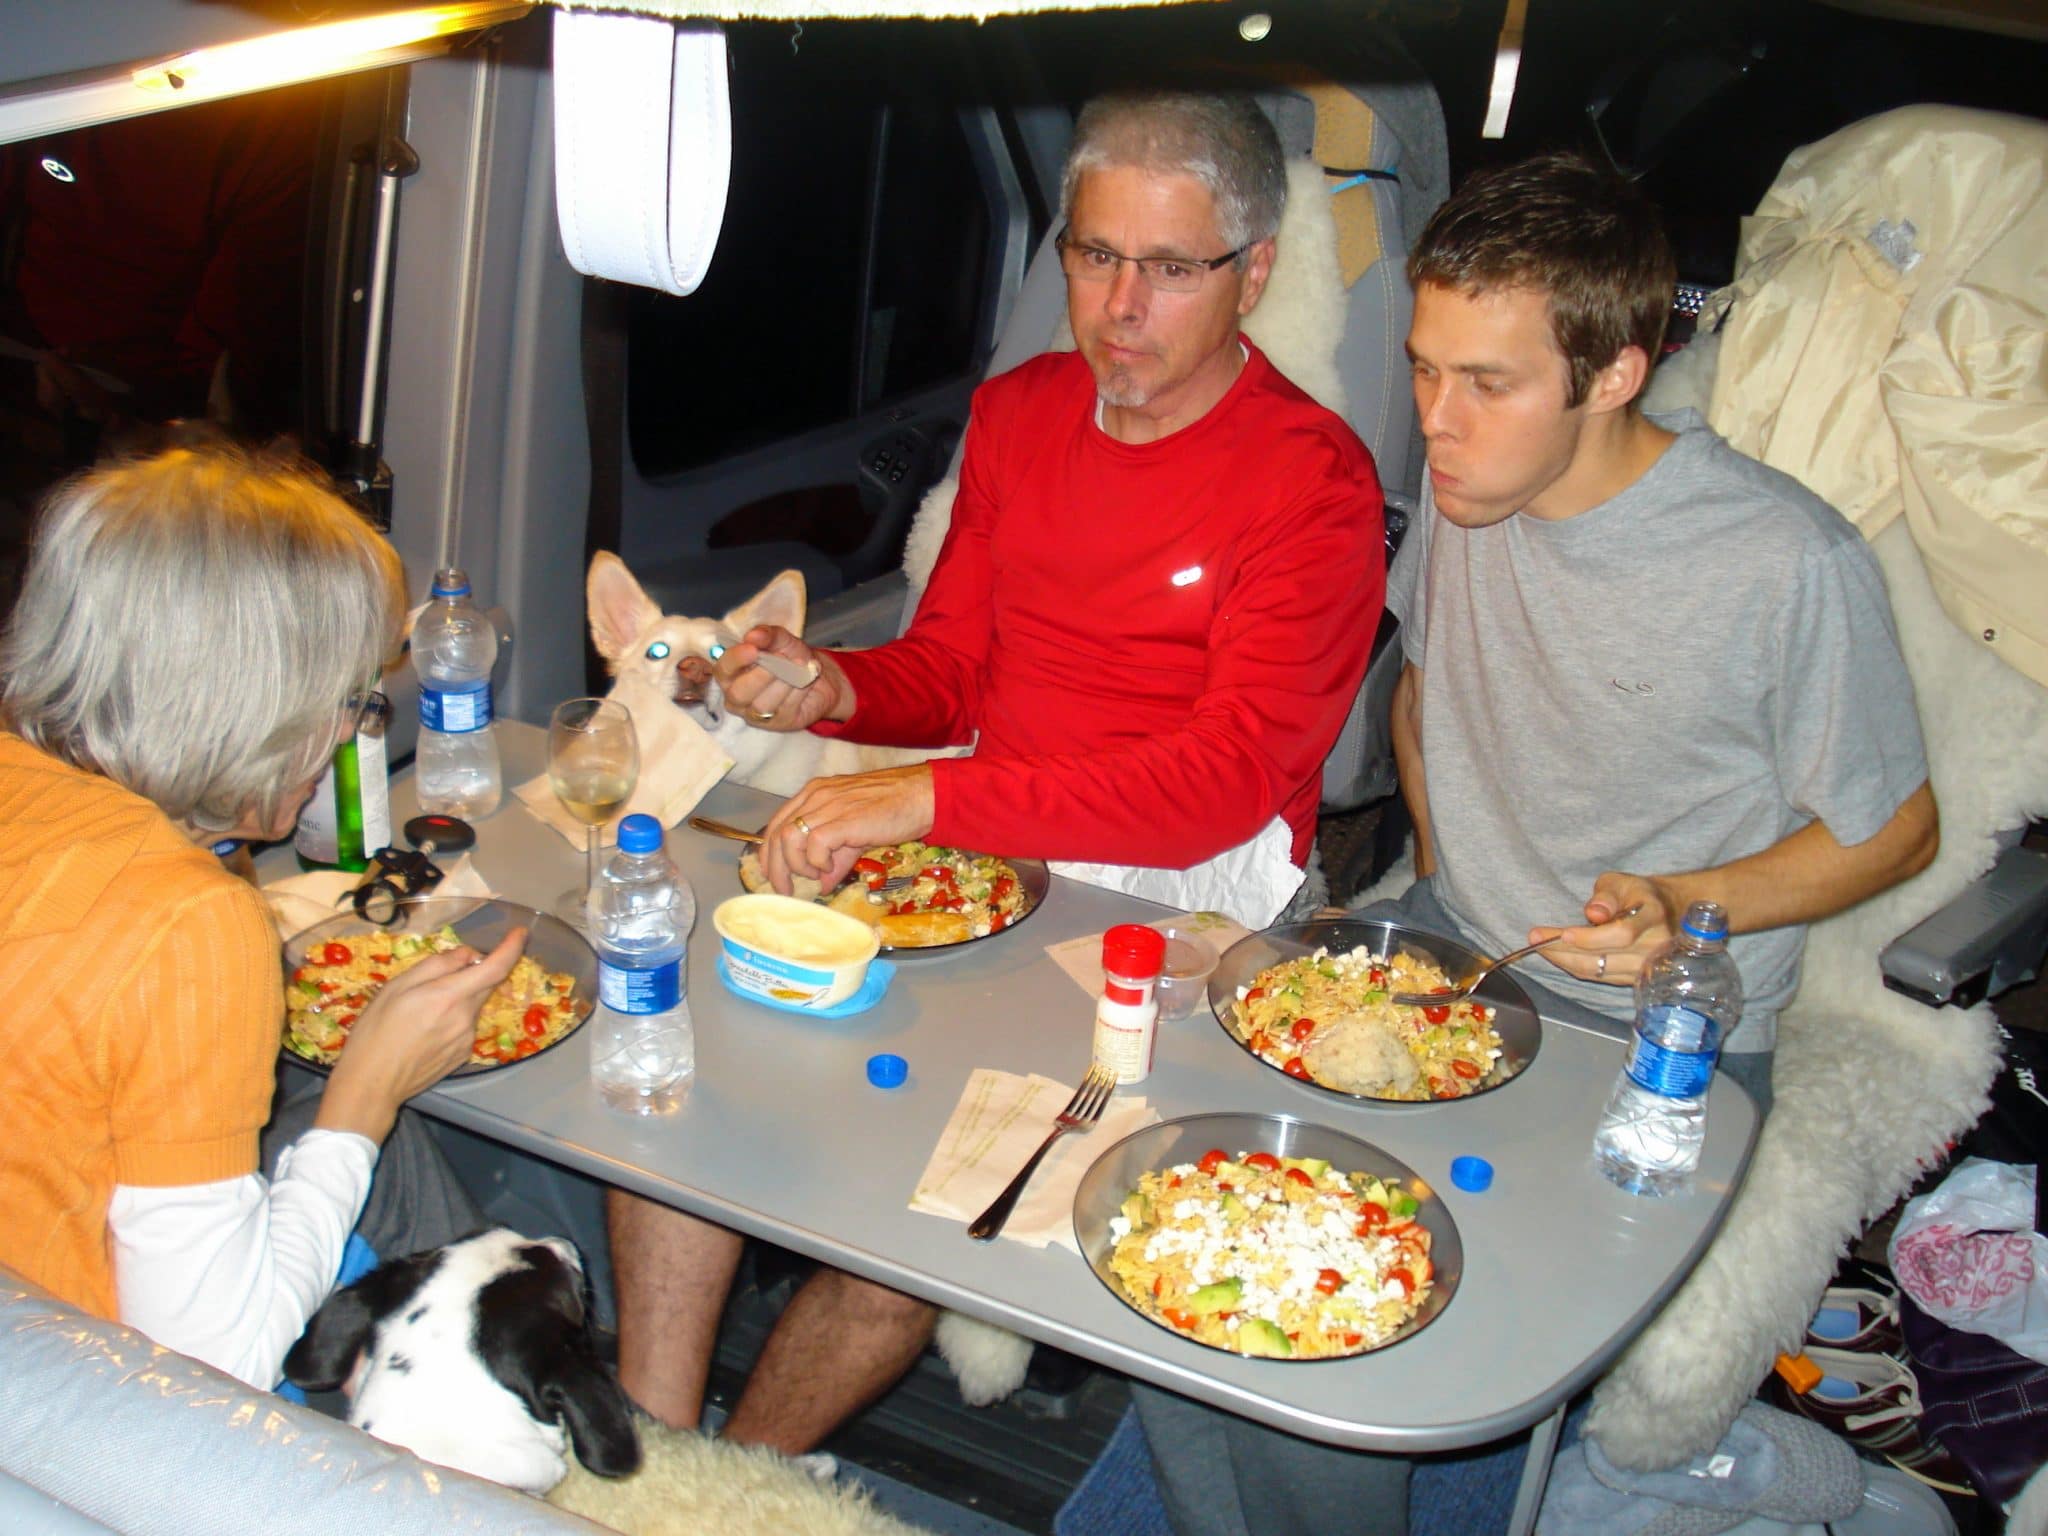 Matt and family eating dinner in RV